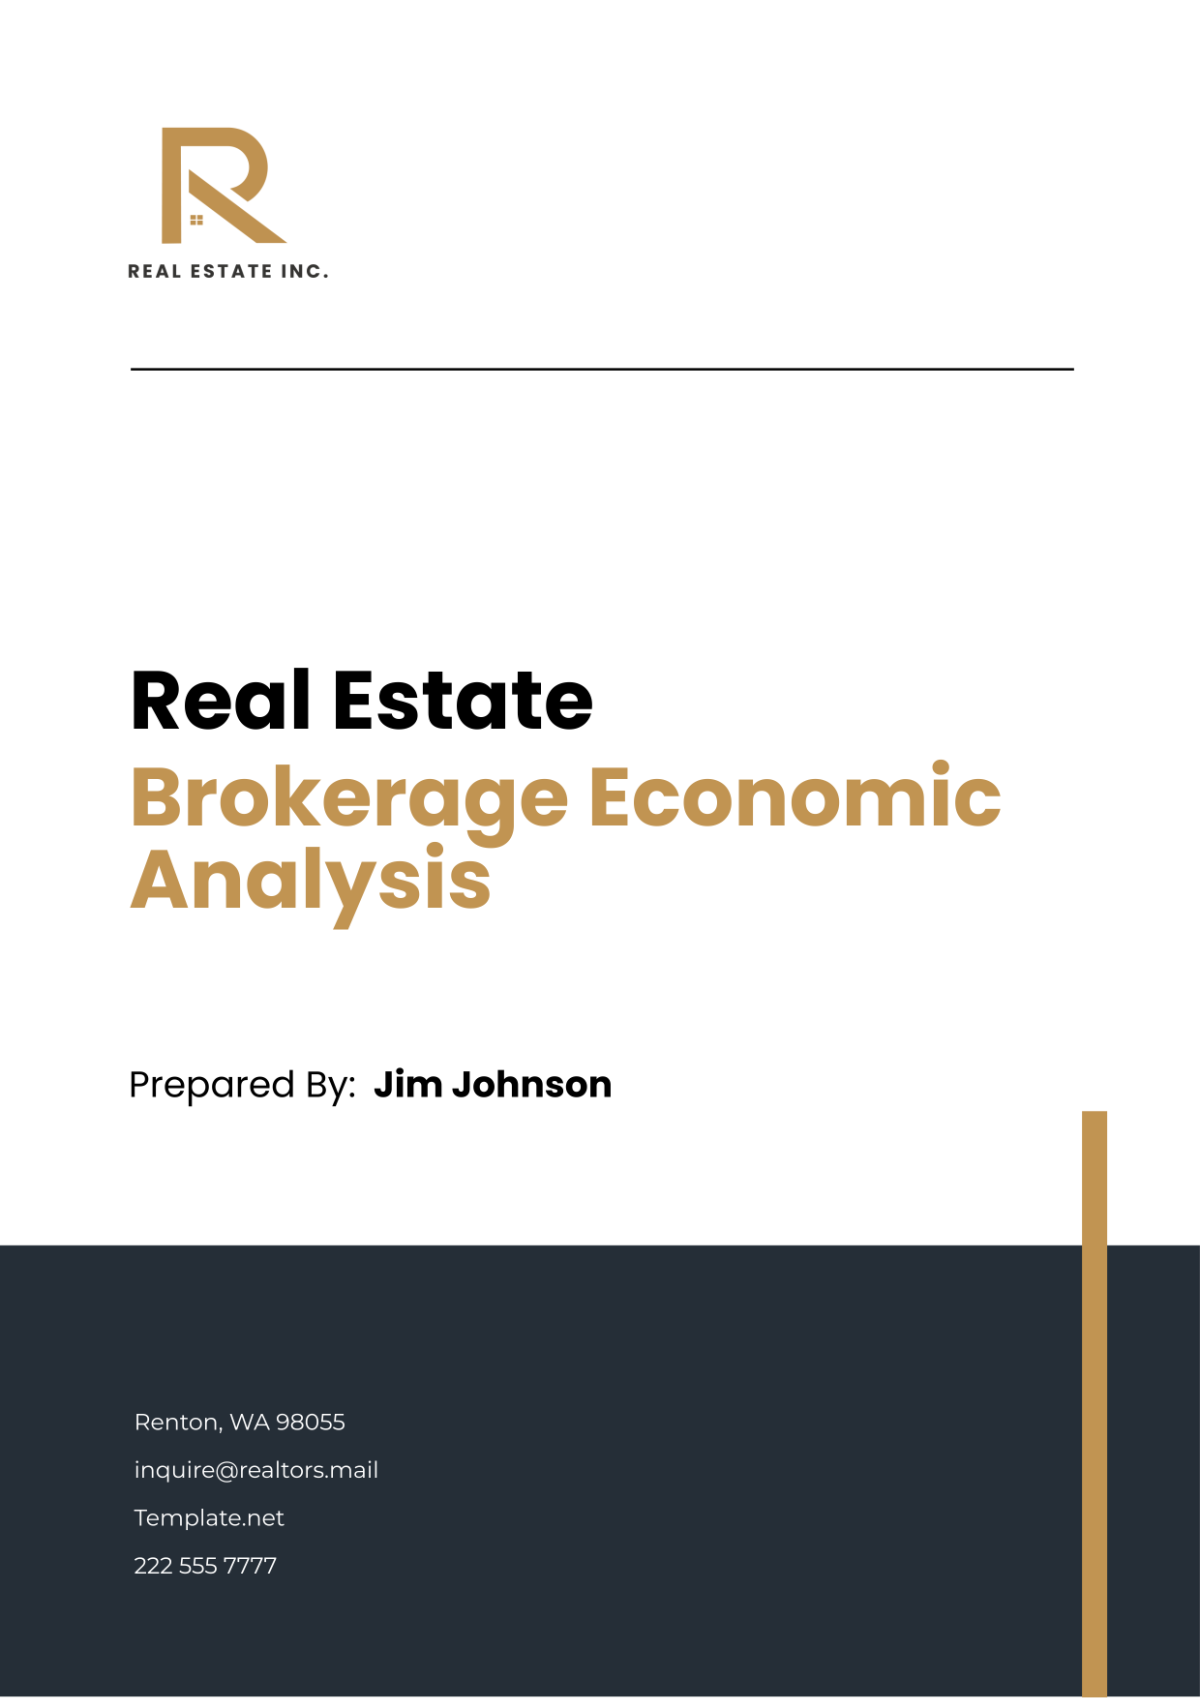 Free Real Estate Brokerage Economic Analysis Template